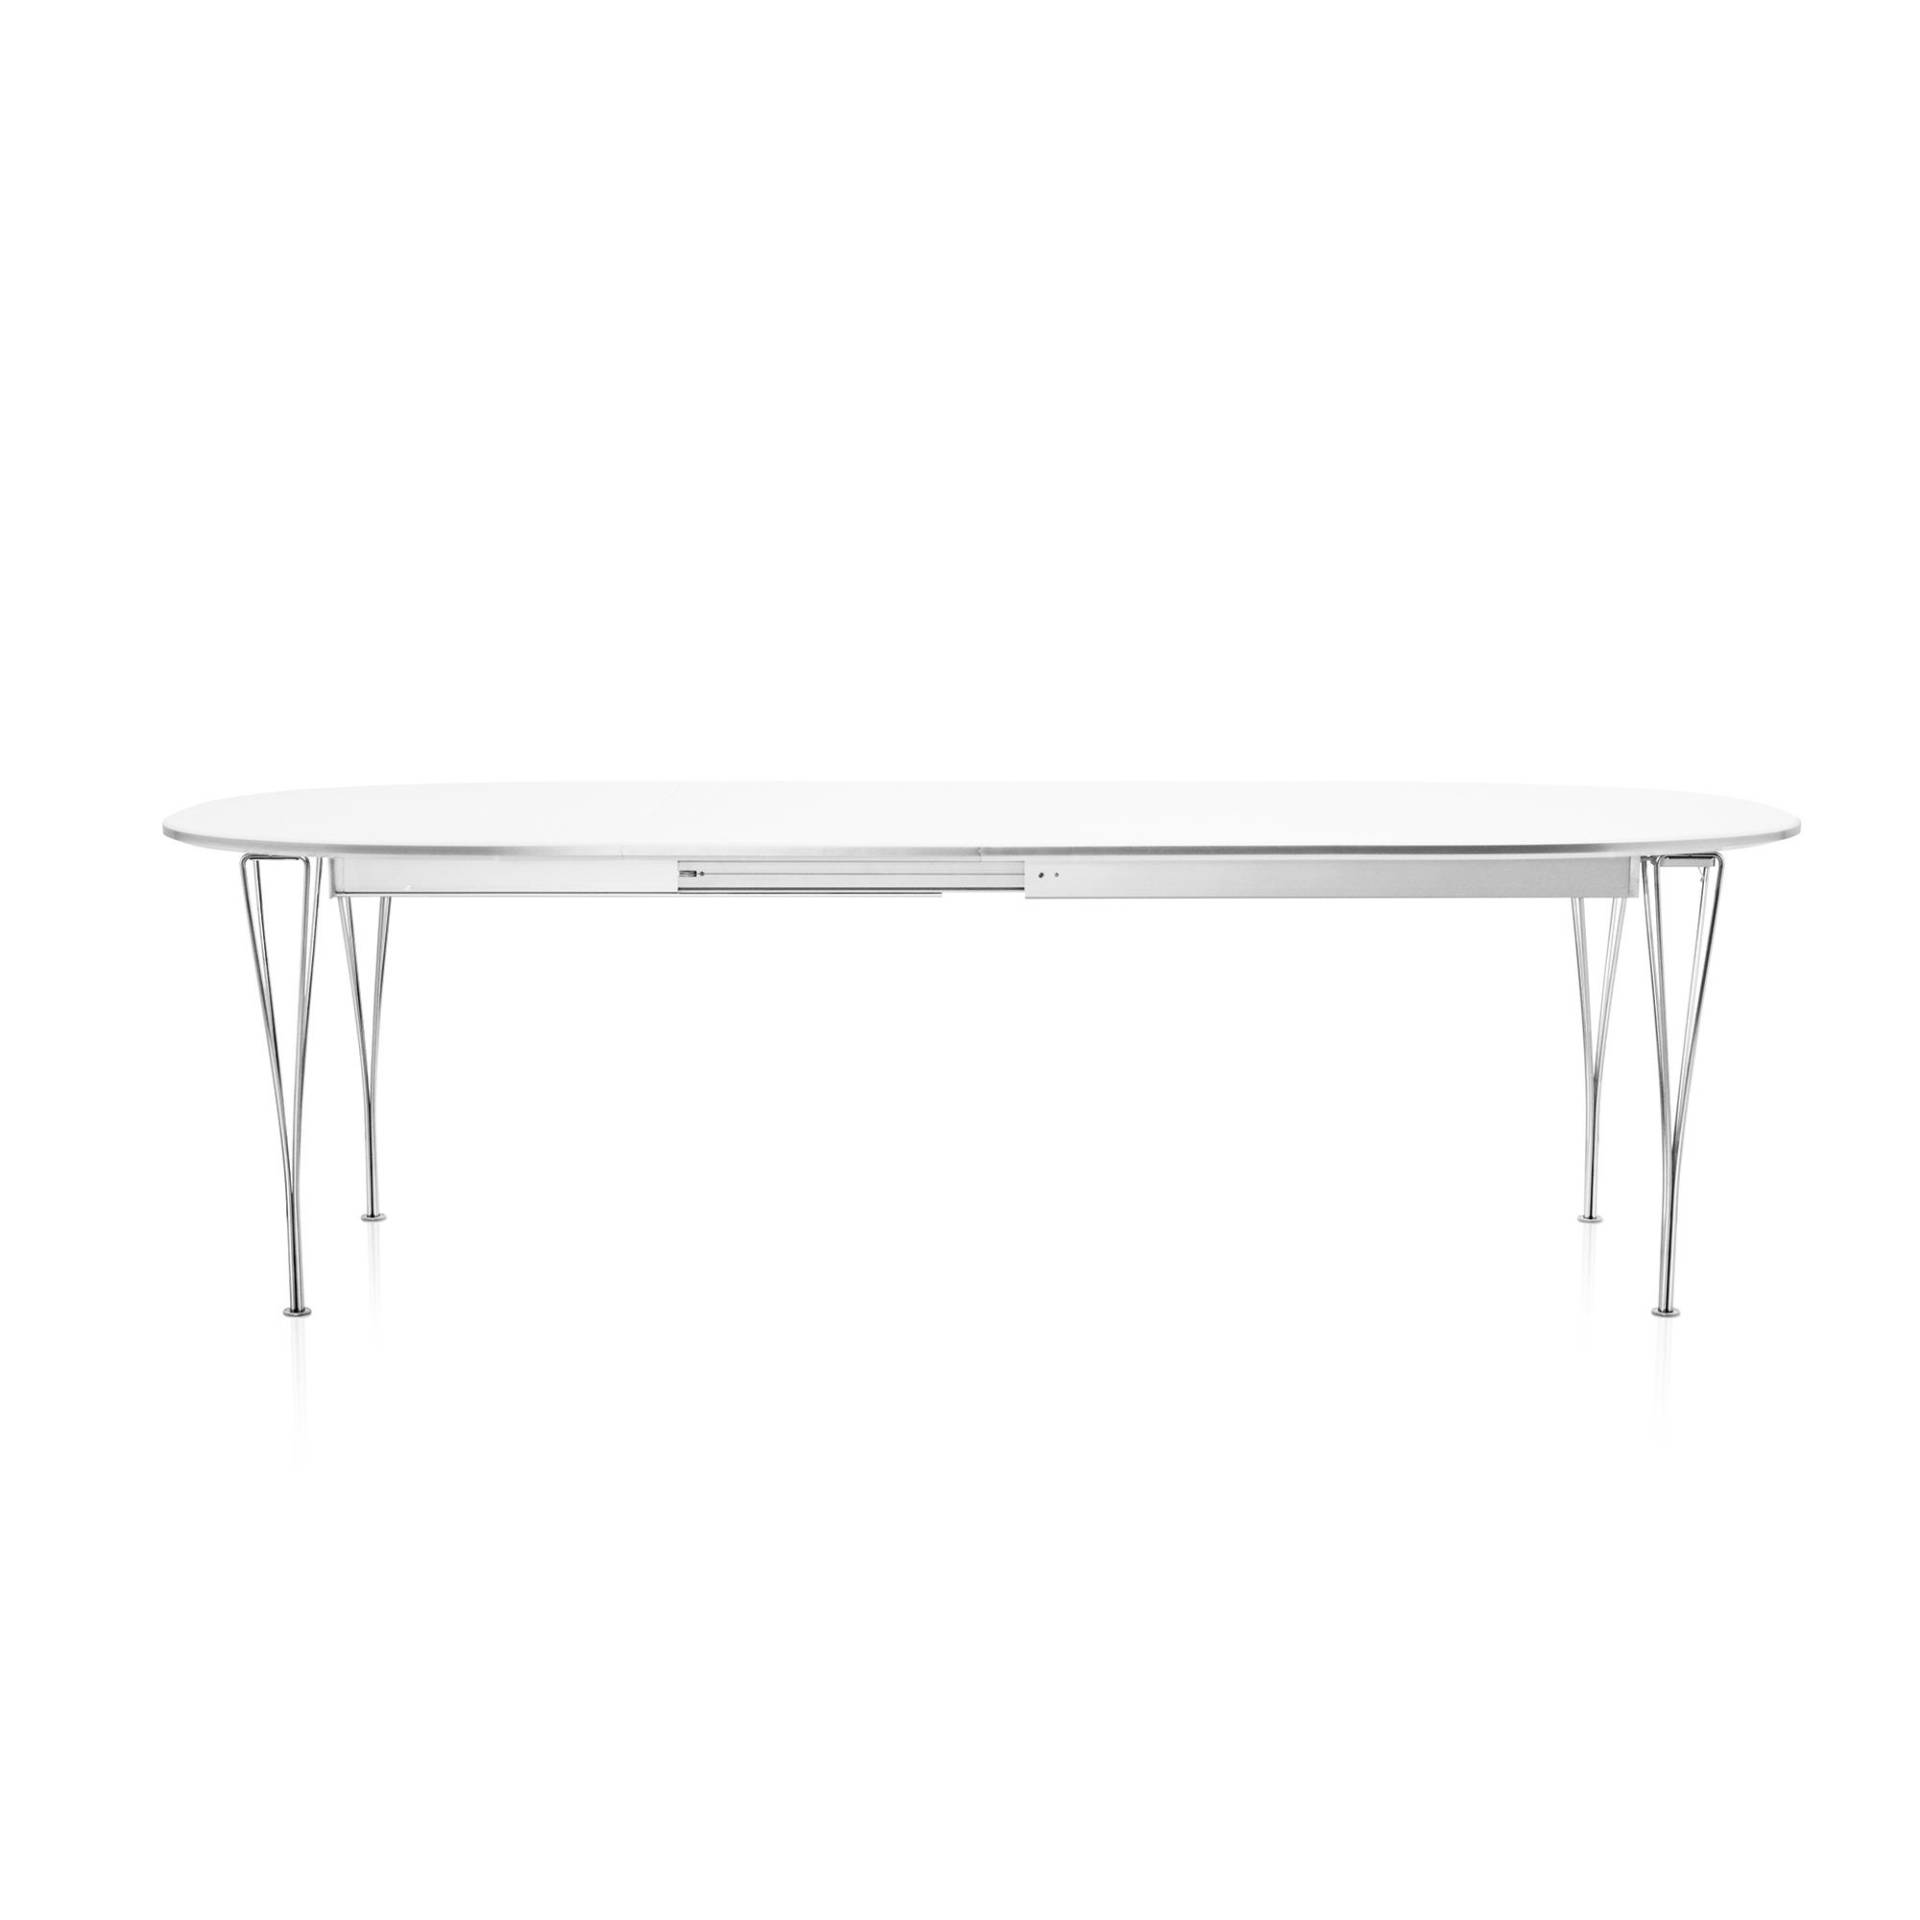 Fritz Hansen - B619 Super-elliptischer Tisch ausziehbar - weiß/Laminat mit Aluminiumkante/Gestell Stahl verchromt/LxBxH 180/300120x72 von Fritz Hansen